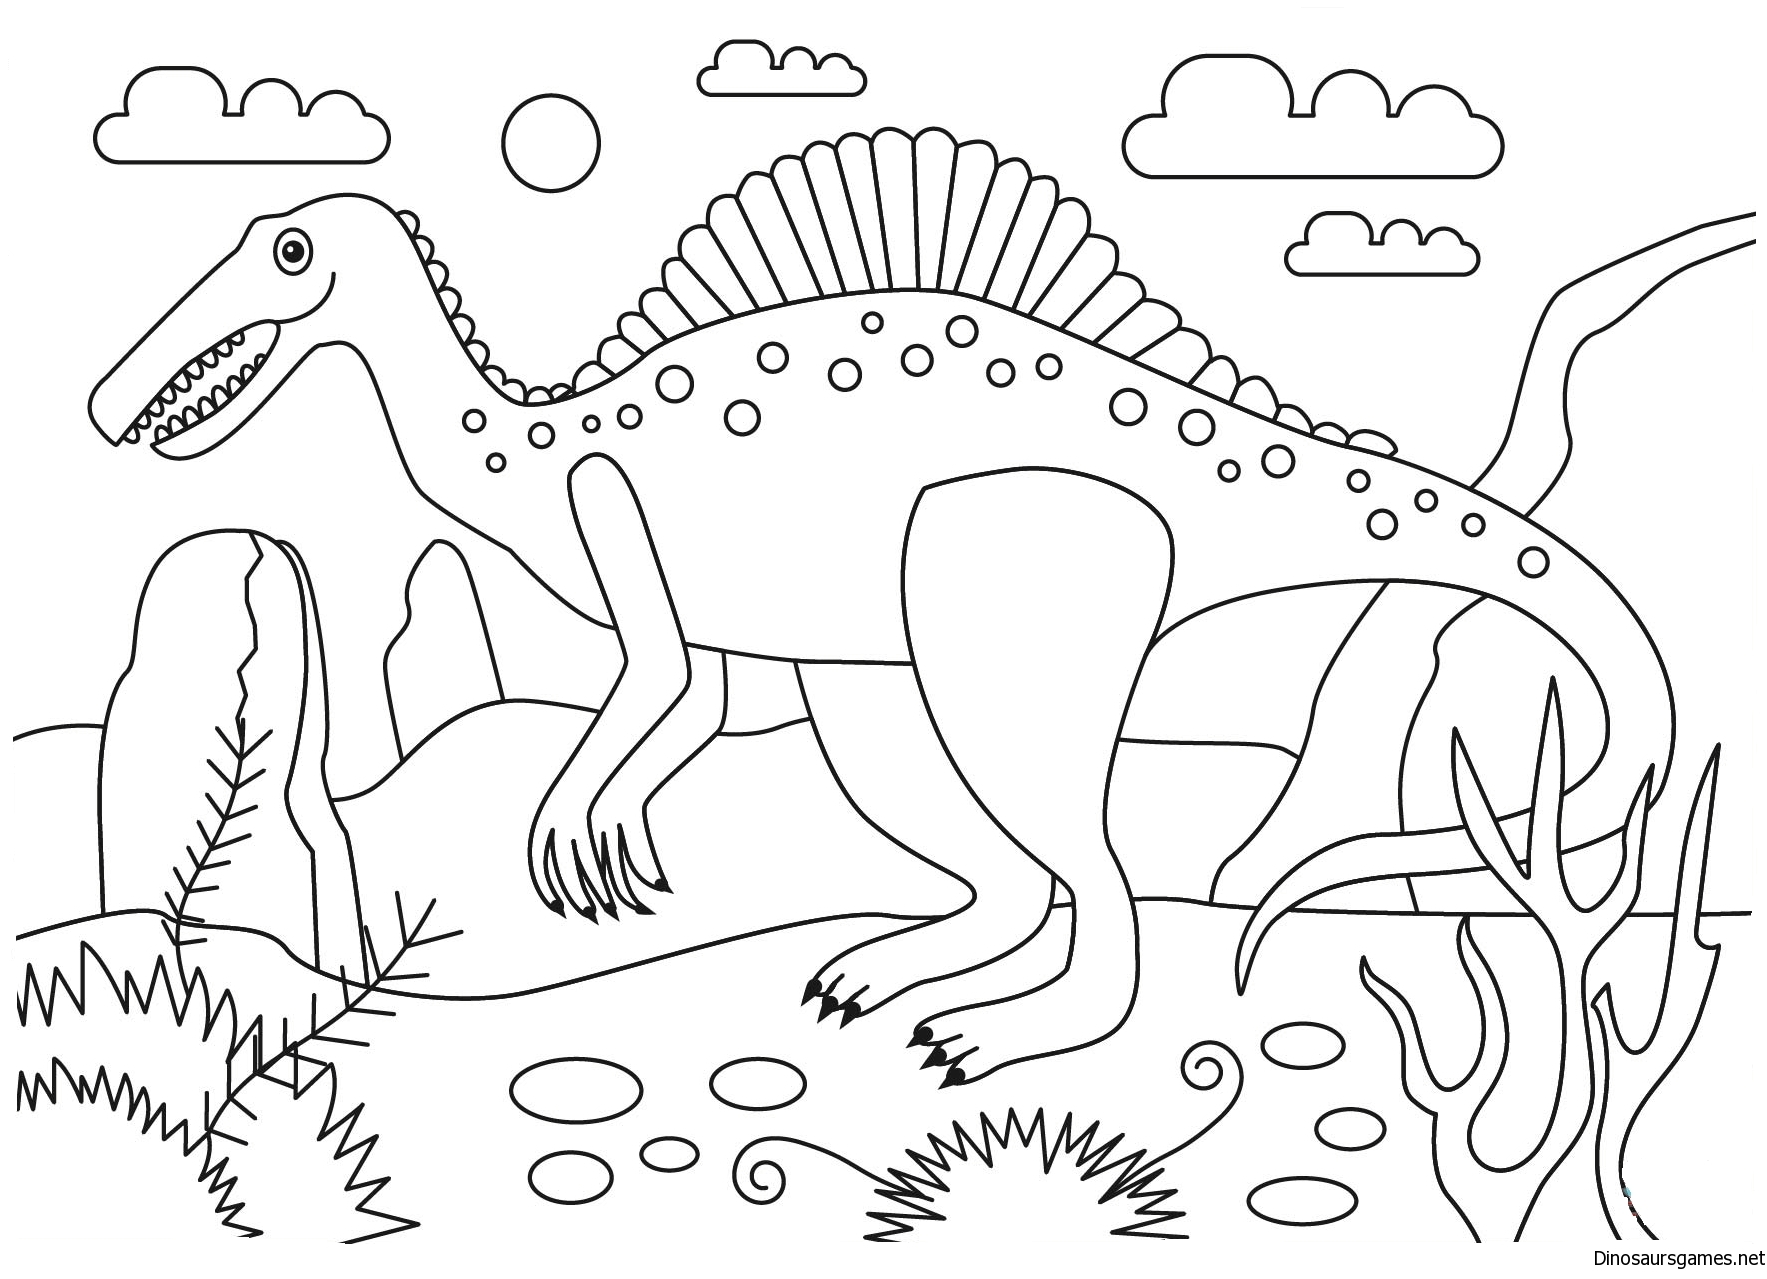 Динозавры раскраска а4. Спинозавр раскраска. Динозавры / раскраска. Динозавр раскраска для детей. Динозавры для раскрашивания детям.